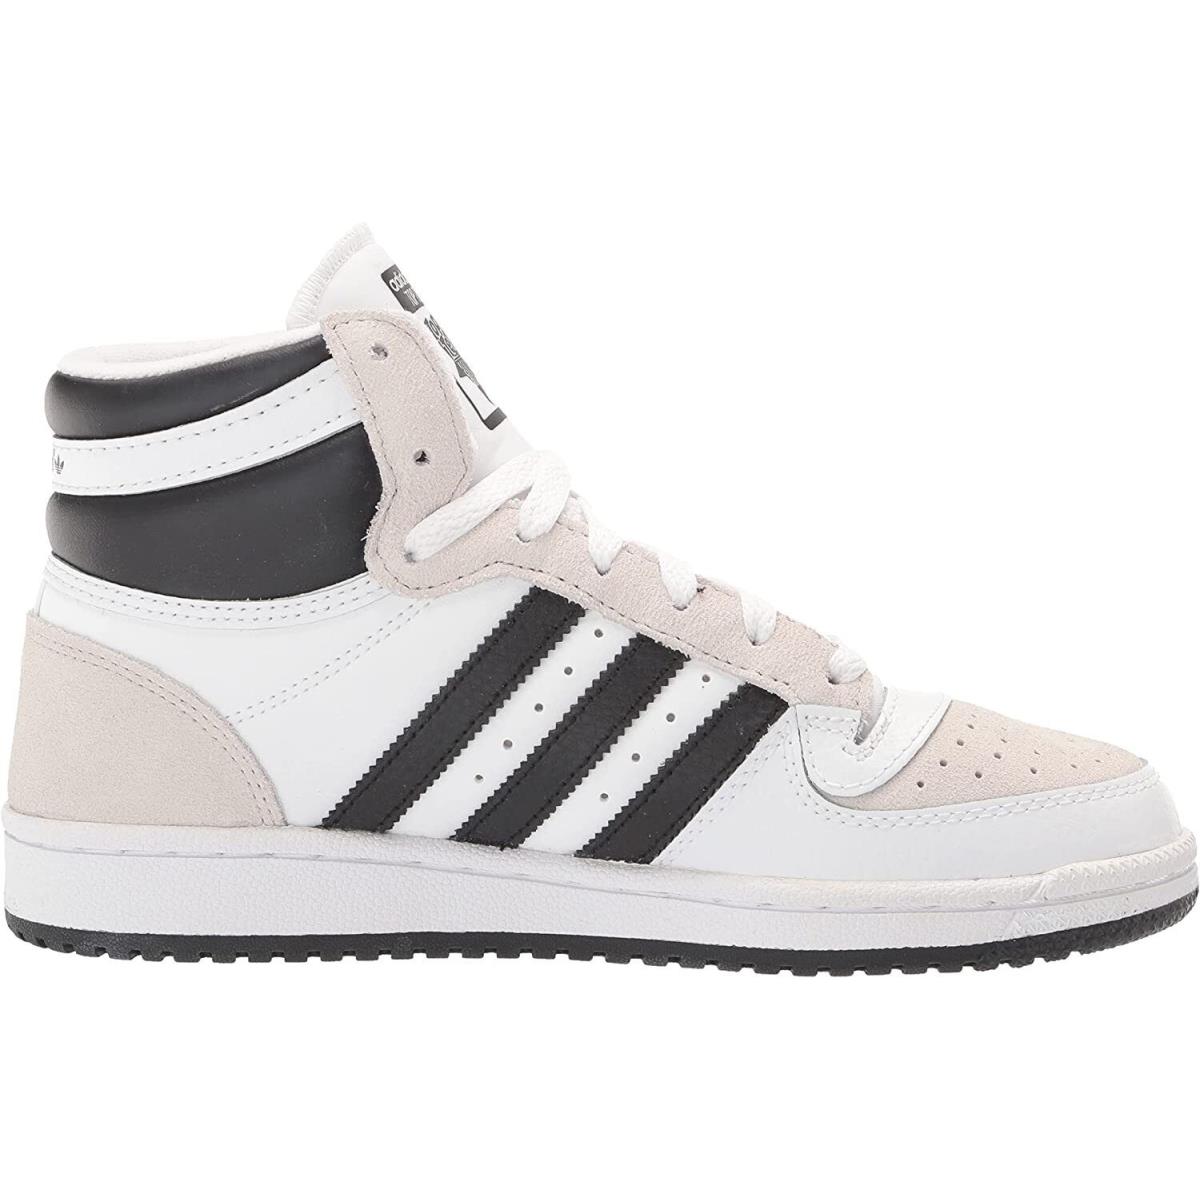 Adidas Top Ten RB Hi 3-Stripe Shoes White Black Men`s Size 9 GX0741